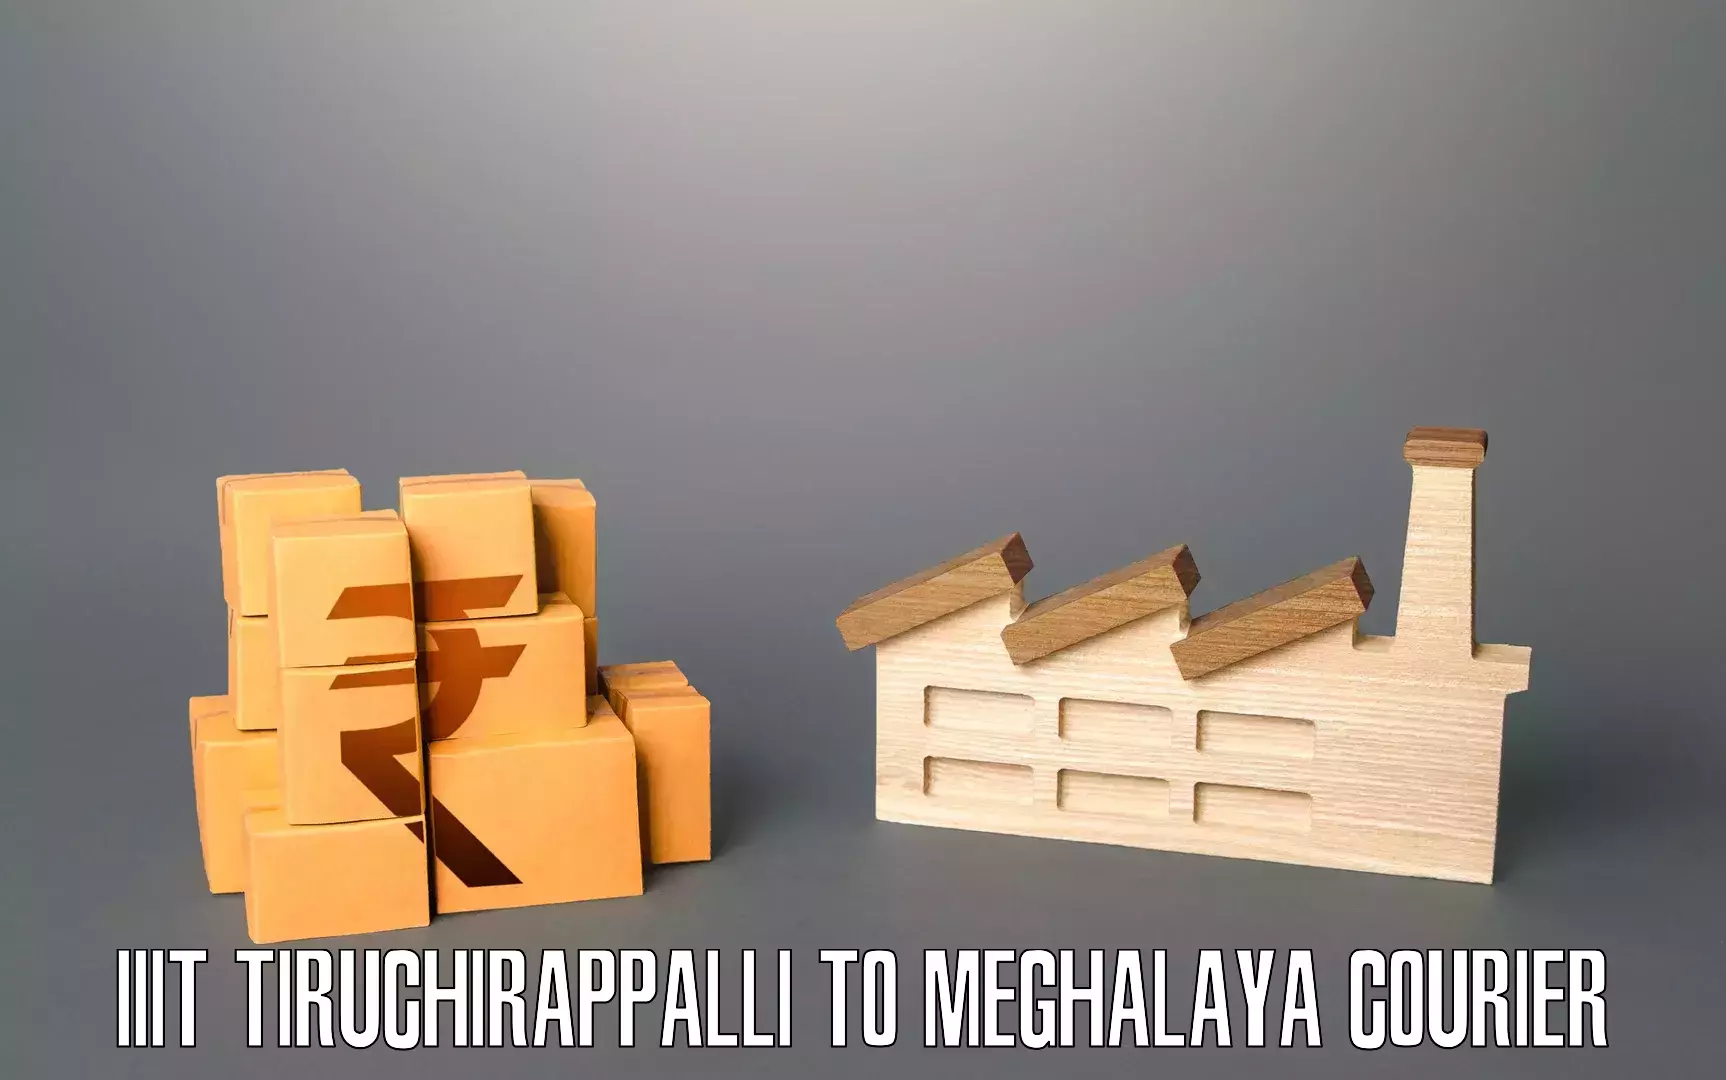 Home goods moving company IIIT Tiruchirappalli to Jowai